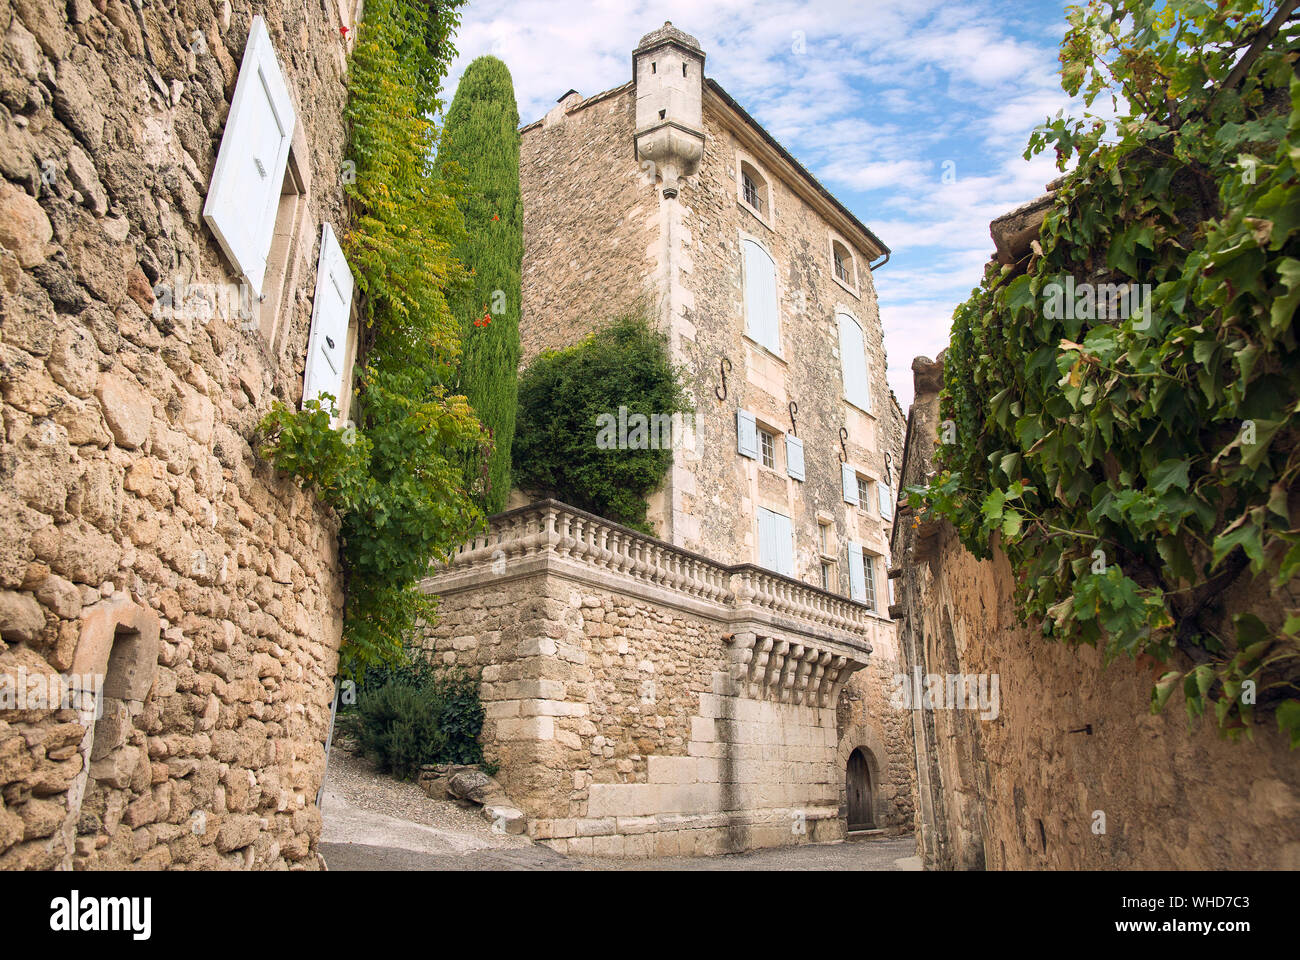 Une vieille maison, Ménerbes, Provence, France Banque D'Images